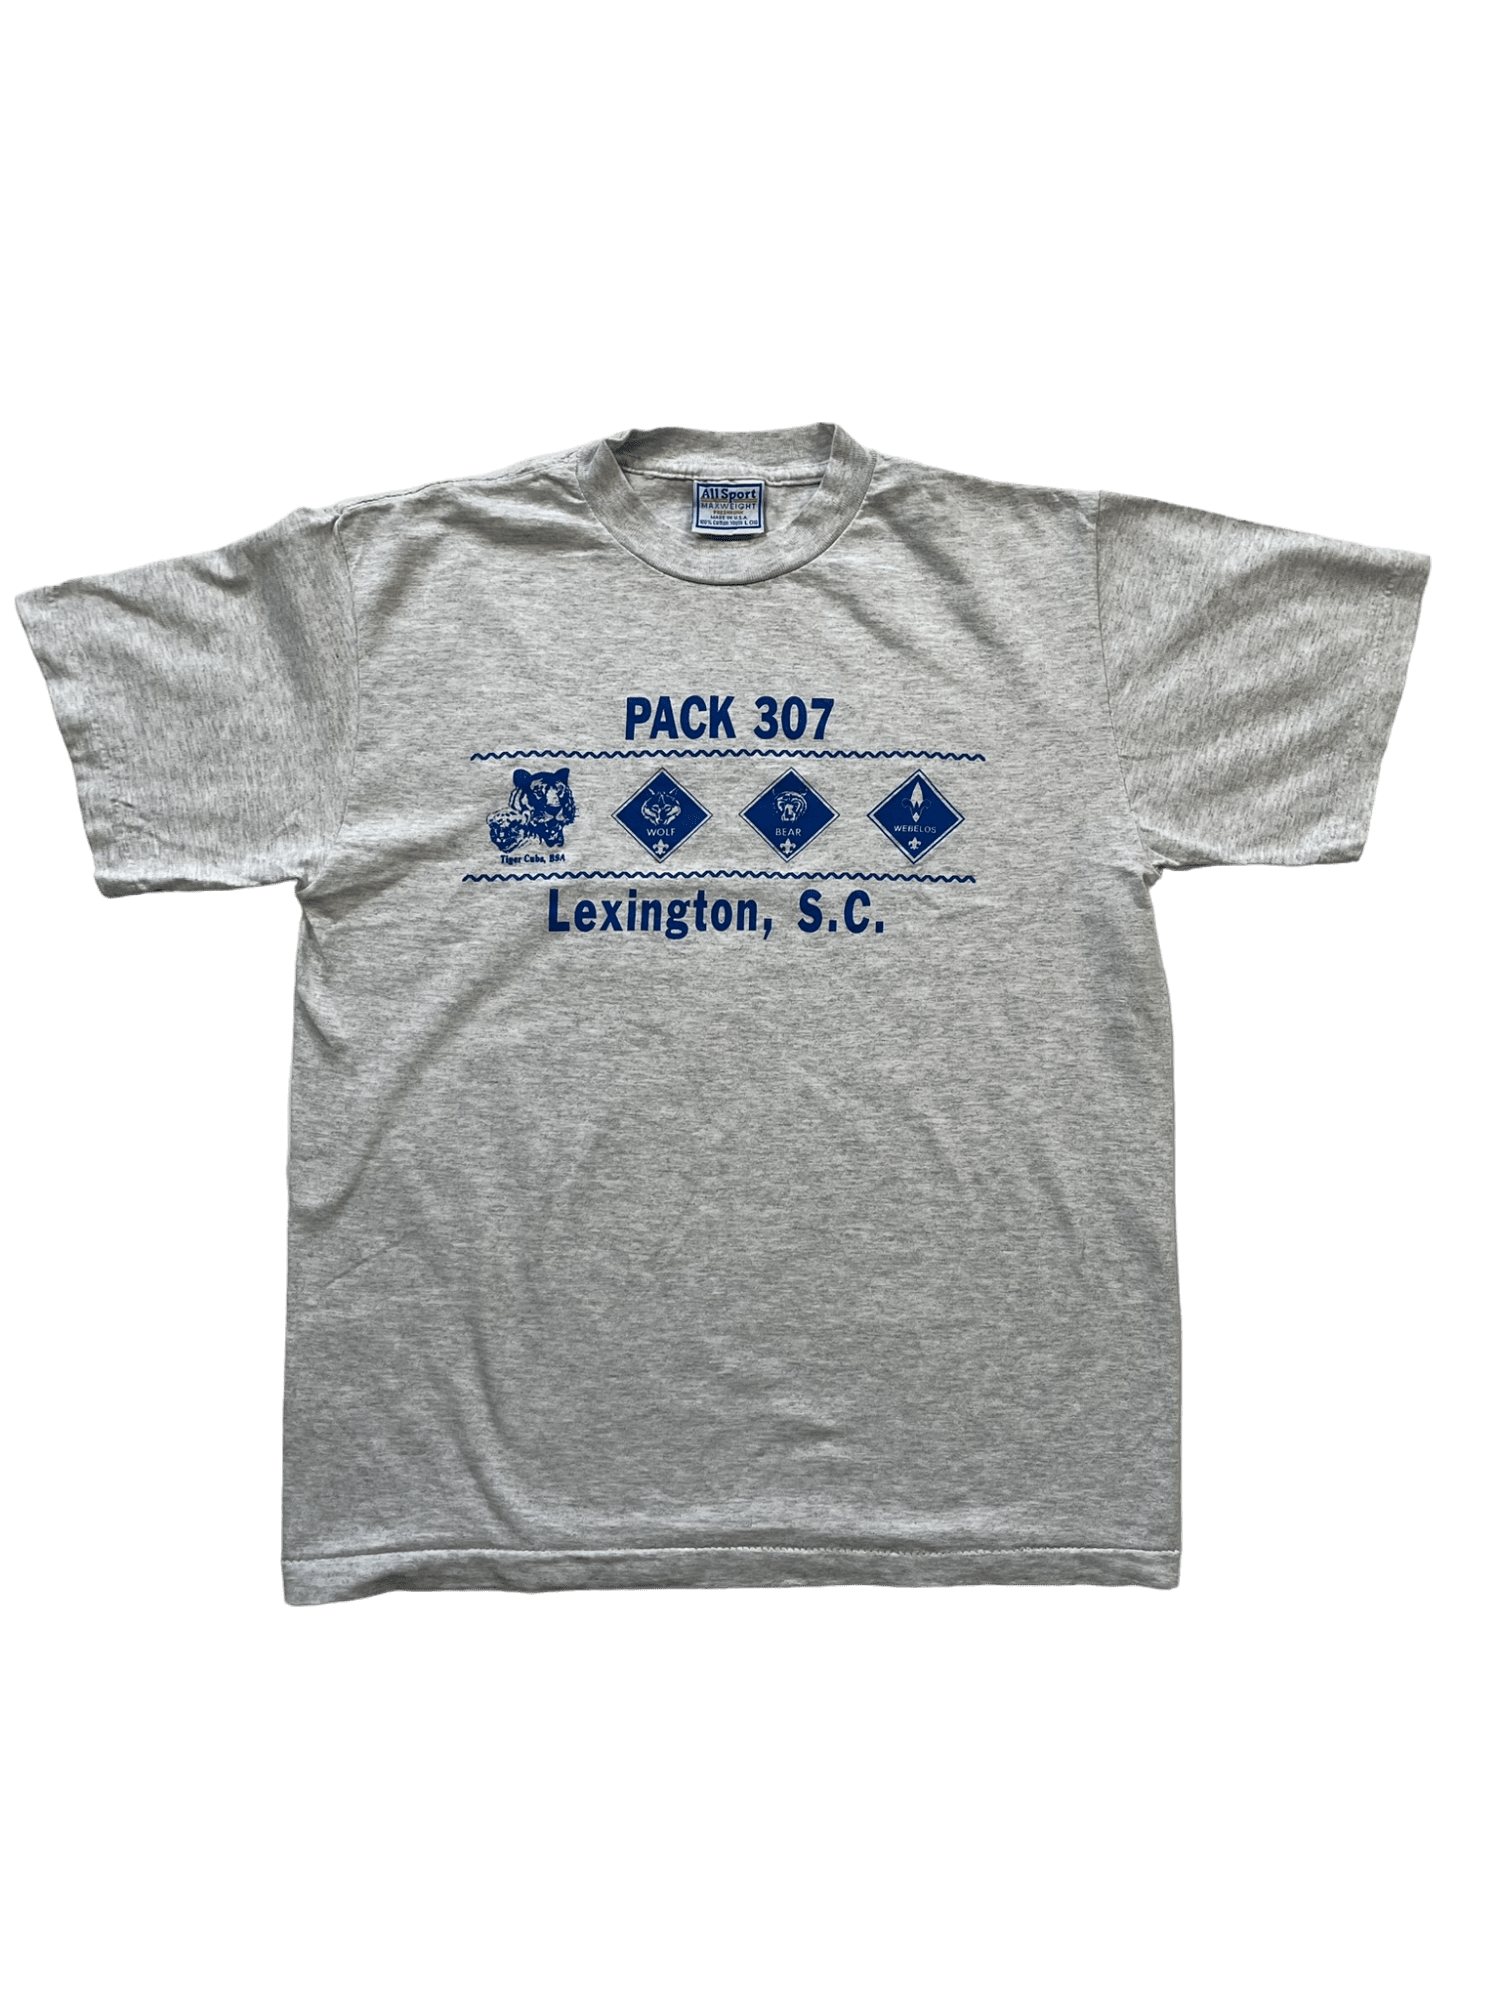 The Vintage Racks Pack 307 Lexington - L